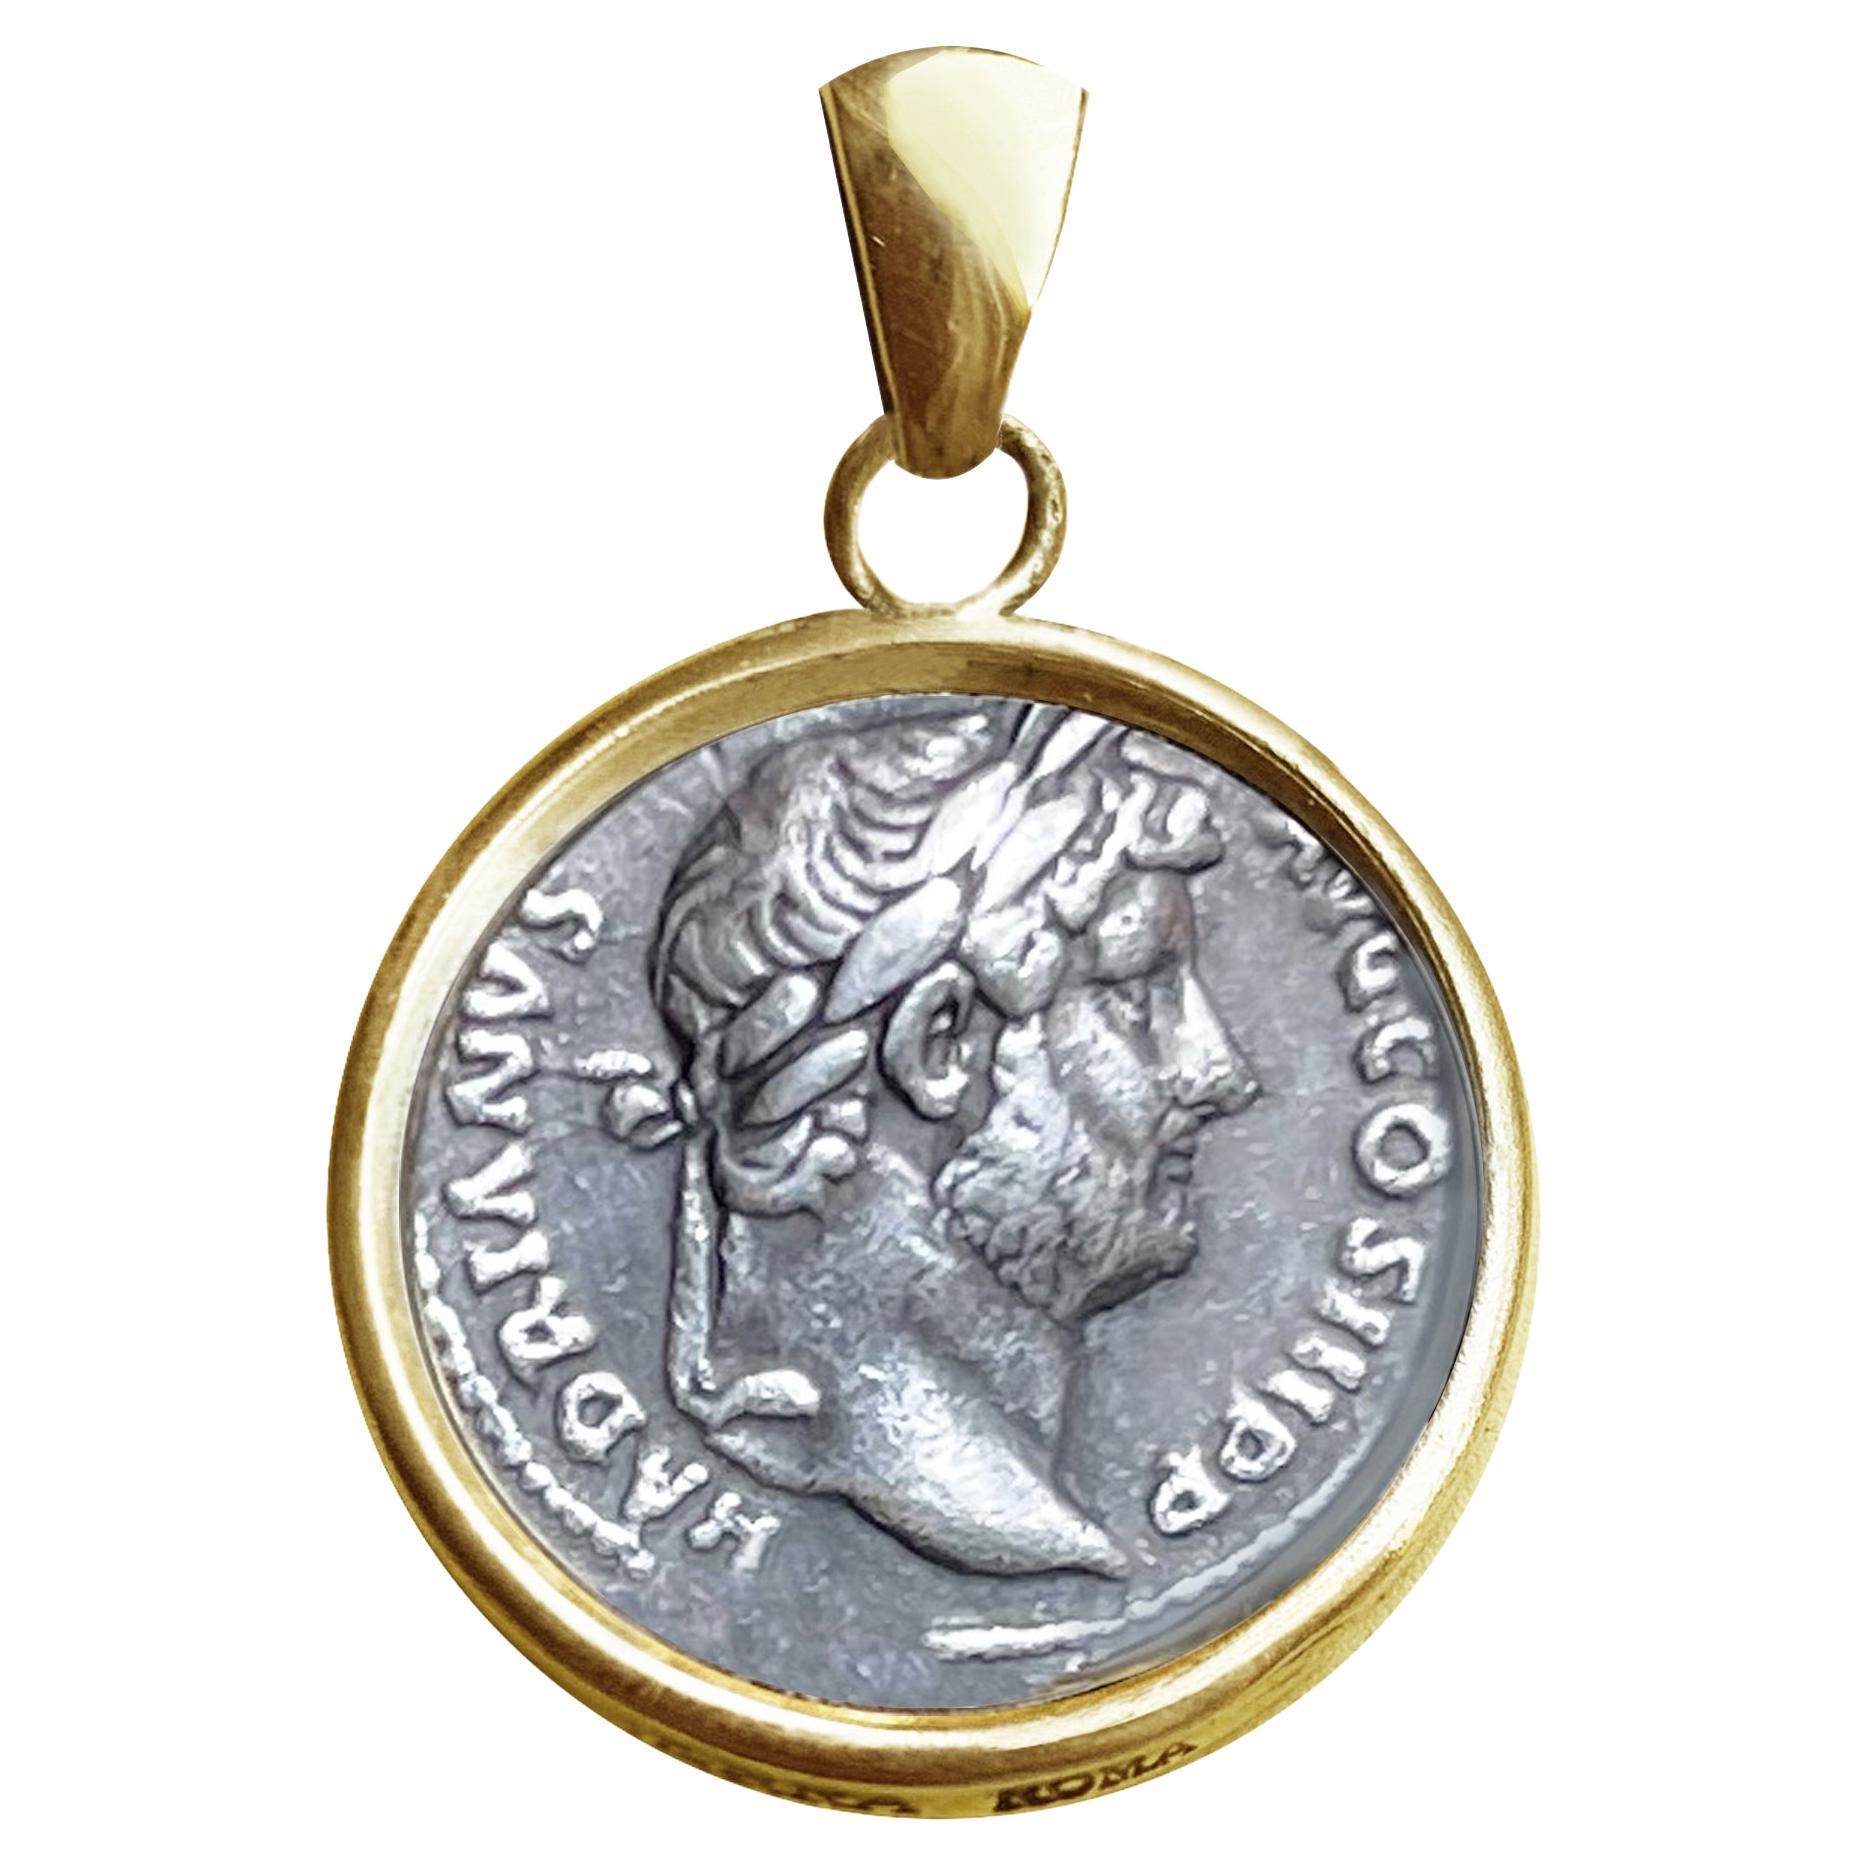 Authentischer römischer Silbermünze-Anhänger aus 18 Karat Gold mit Emp. Hadrian '2nd Cent. ADS'